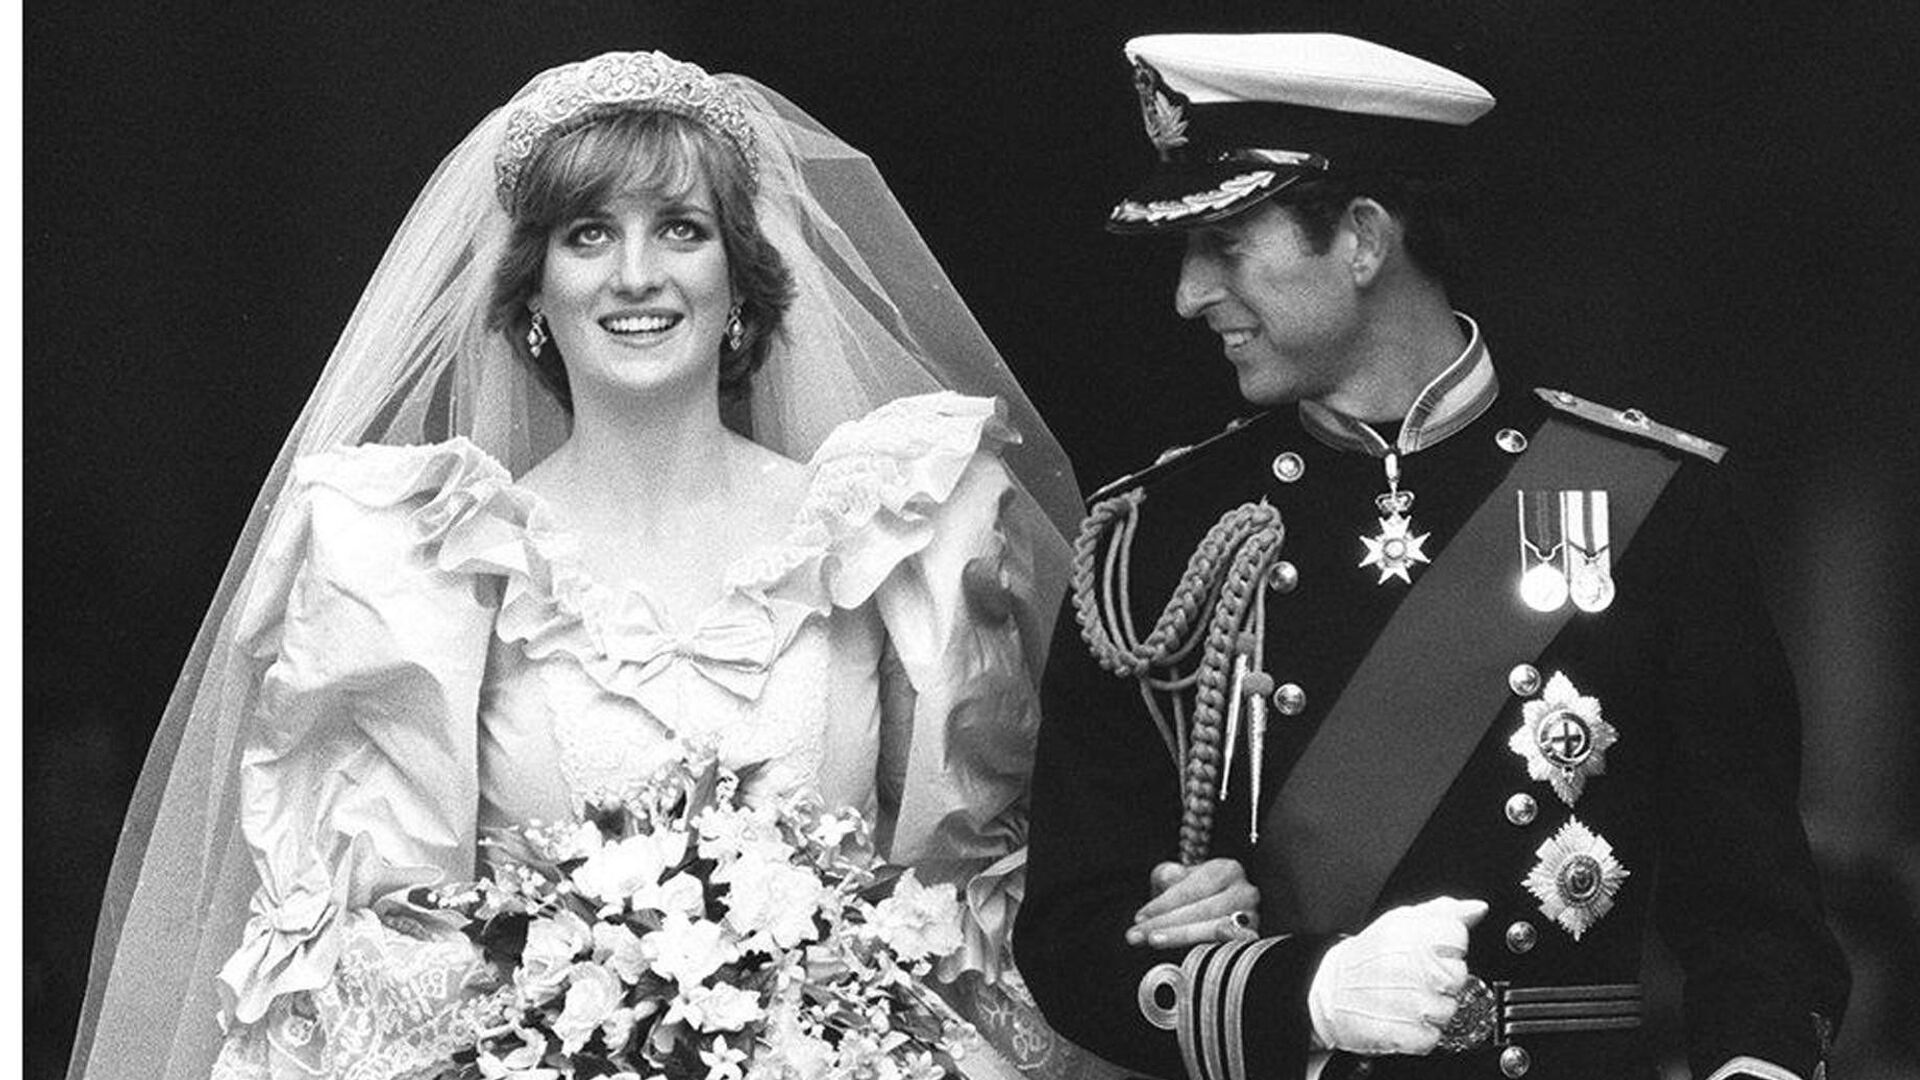 Принцесса Диана и принц Чарльз в день своей свадьбы в Лондоне, 29 июля 1981  - РИА Новости, 1920, 29.07.2020